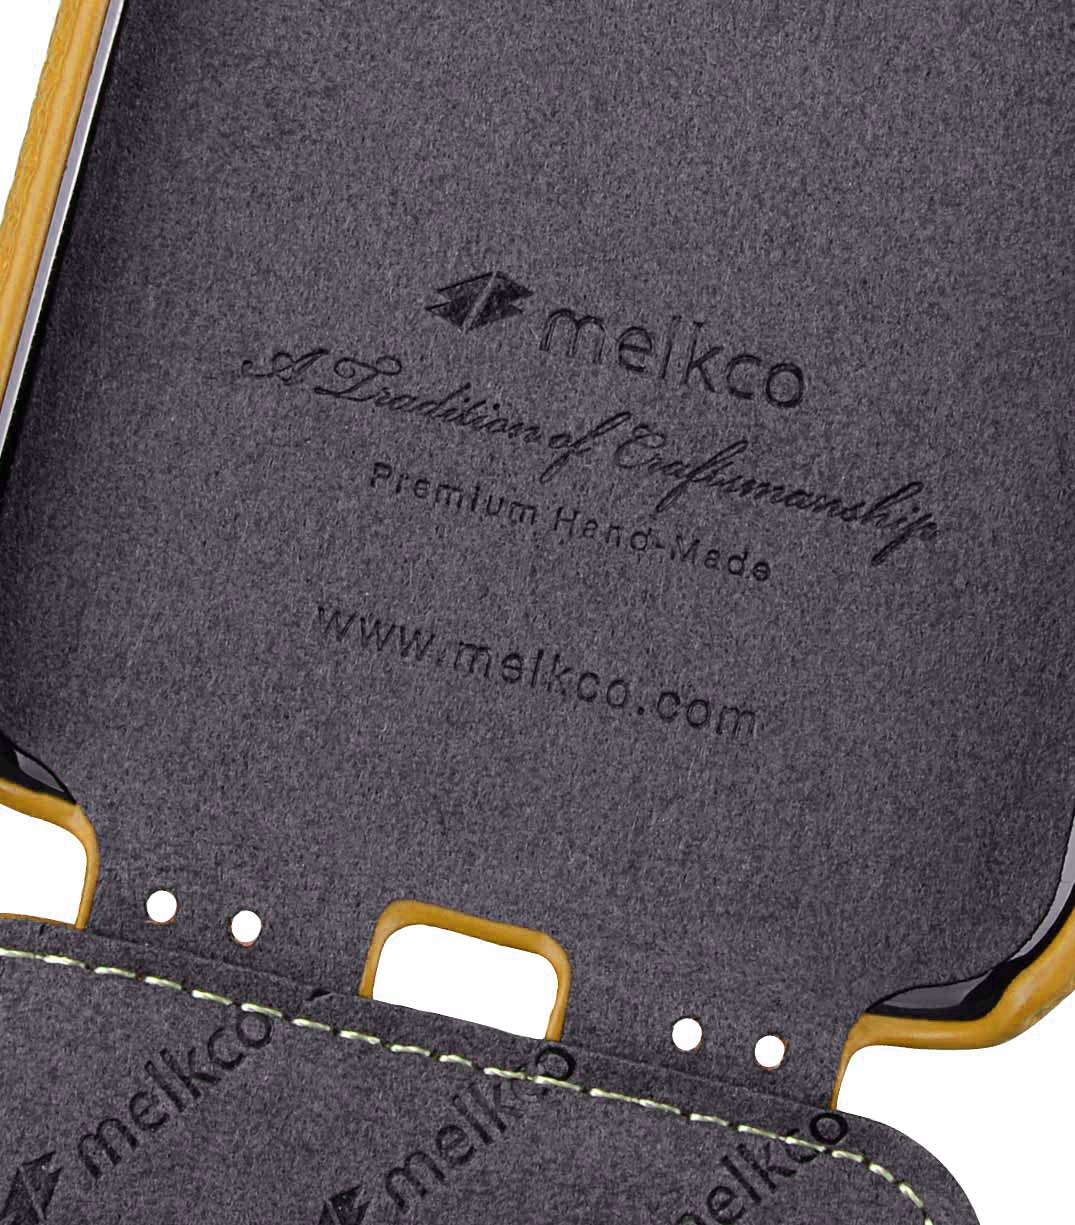 фото Чехол для сотового телефона Melkco Кожаный чехол флип для Apple iPhone XR - Jacka Type, желтый